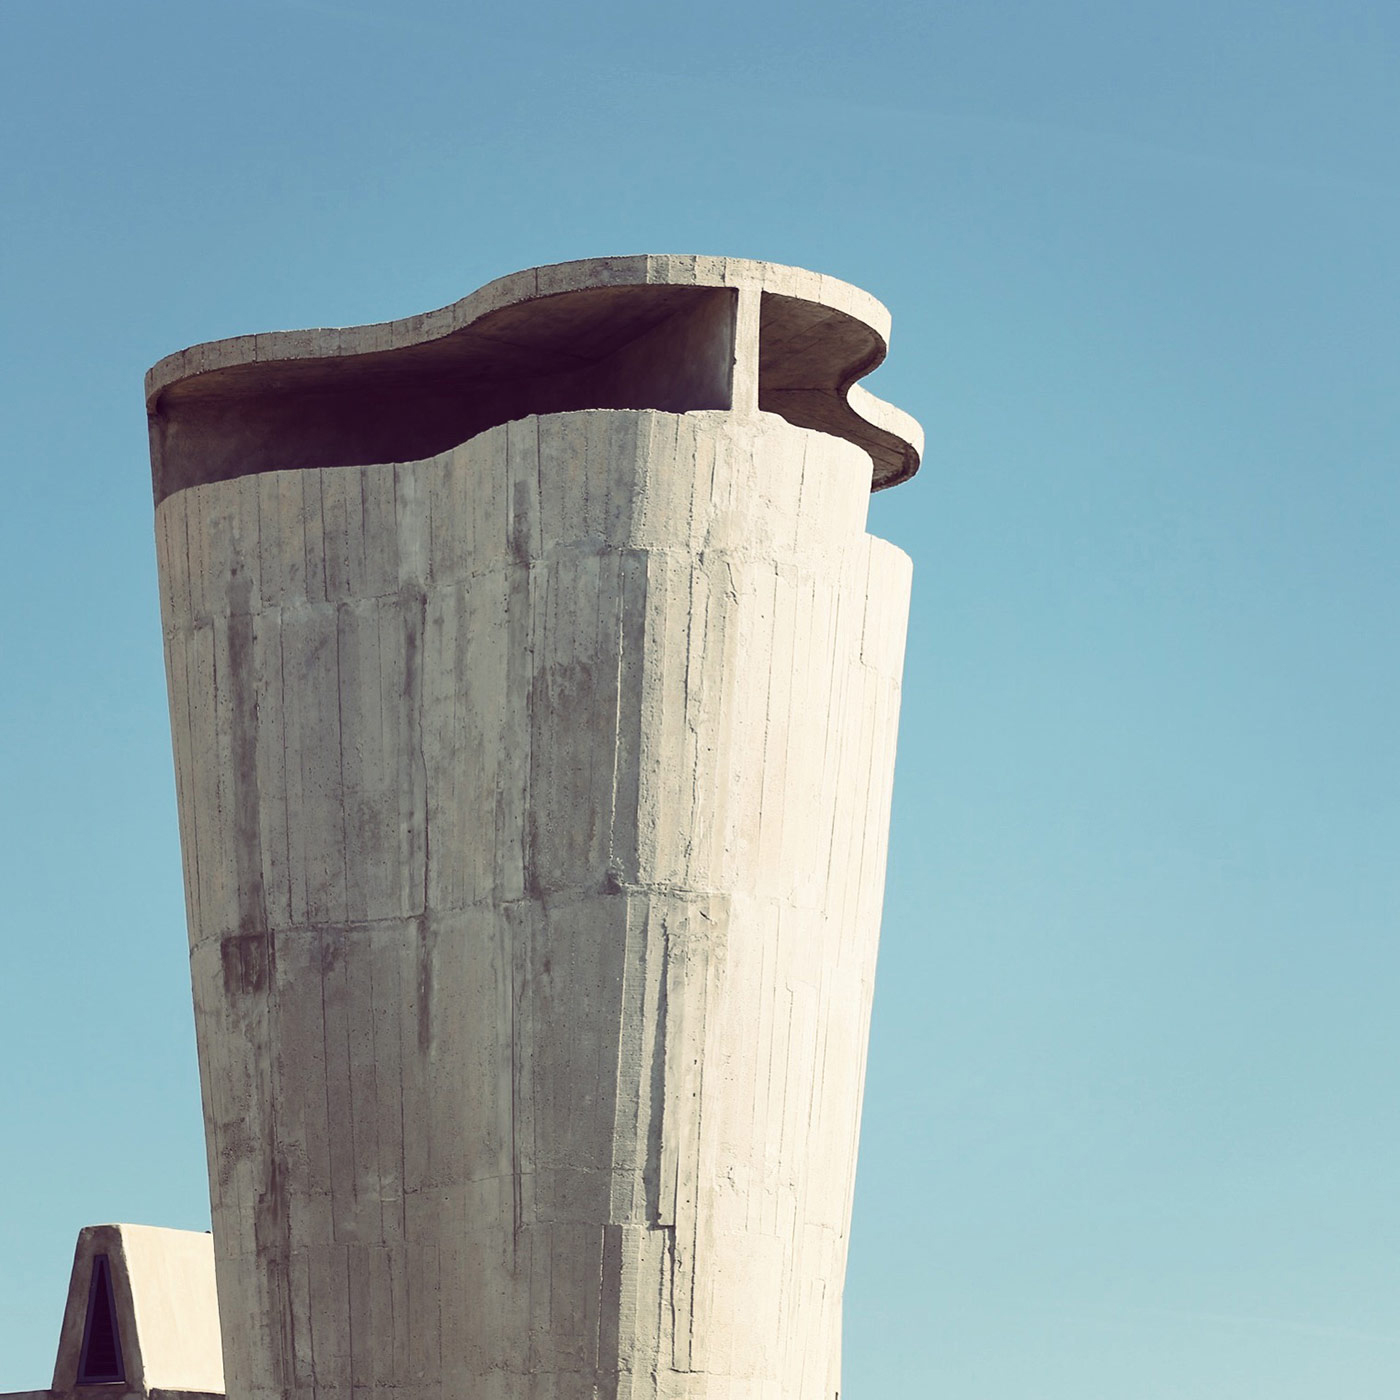 Cité Radieuse <br />Location: Marseille, France <br />Architect: Le Corbusier